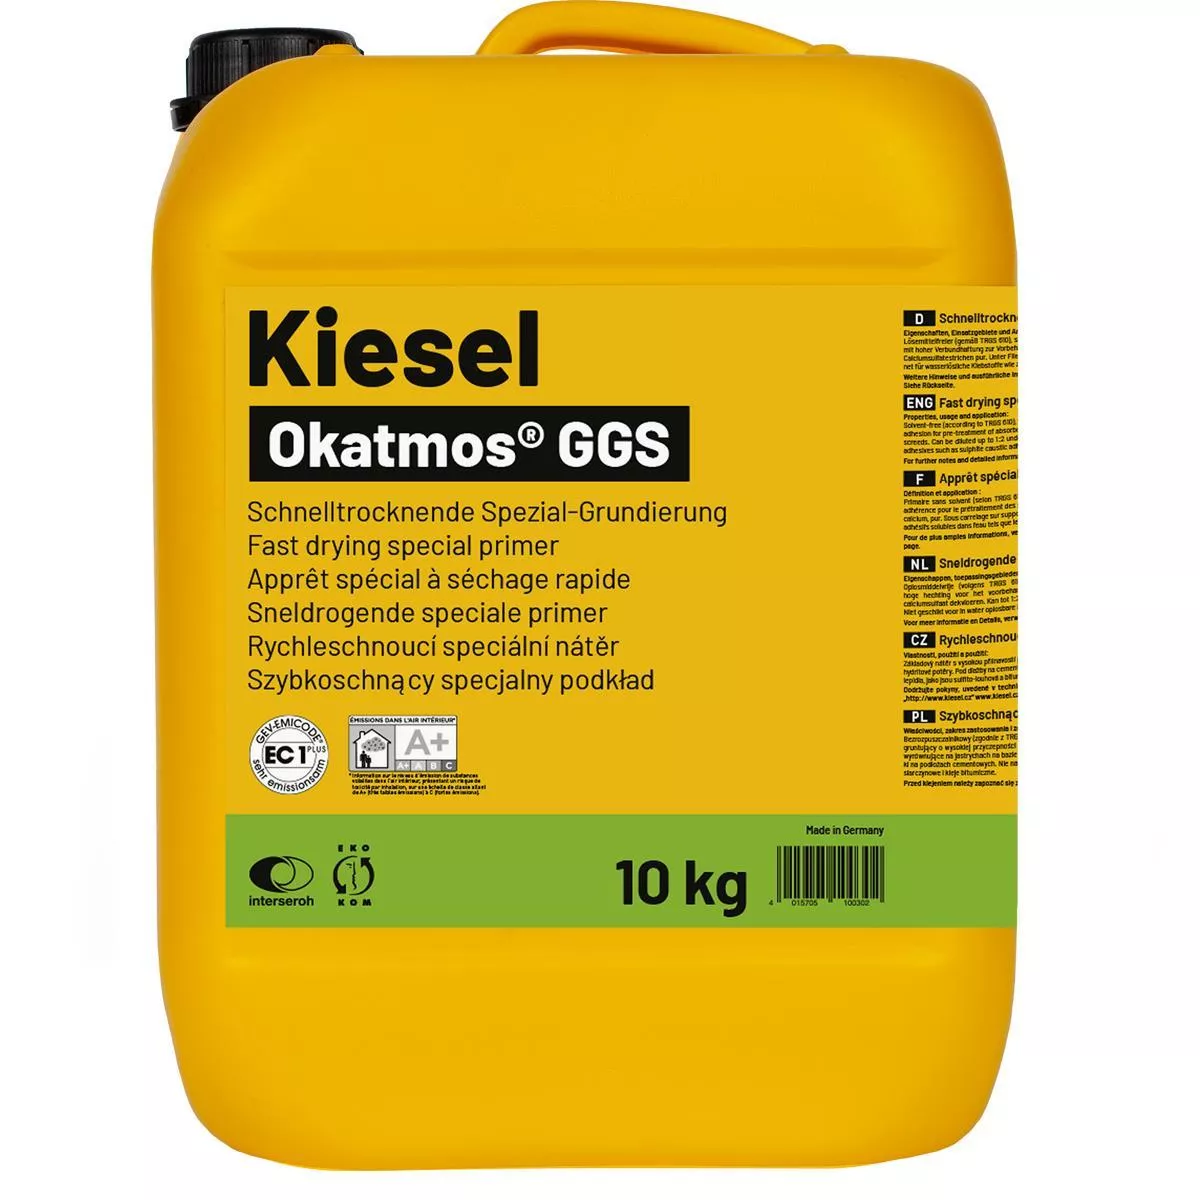 Apprêt spécial Okatmos GGS 10 kg